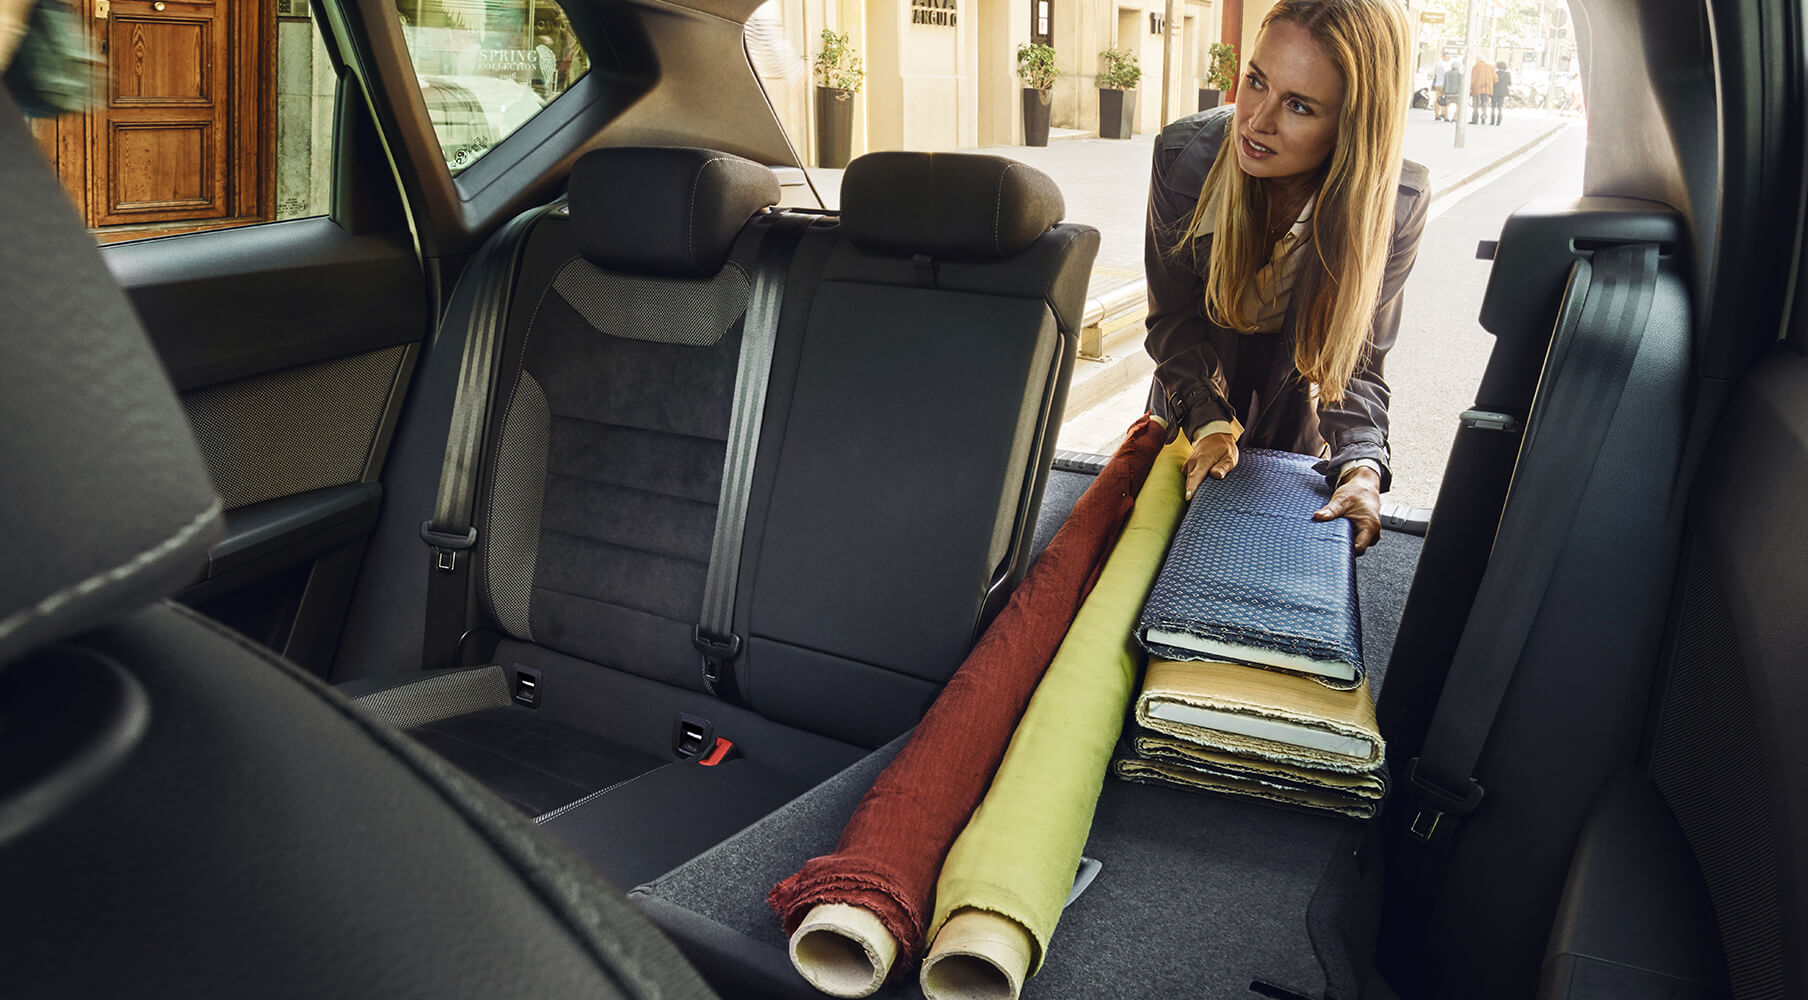 SEAT servizi auto nuove e manutenzione – Una donna sistema degli oggetti nei sedili posteriori di un’auto con il sedile abbassato per avere più spazio